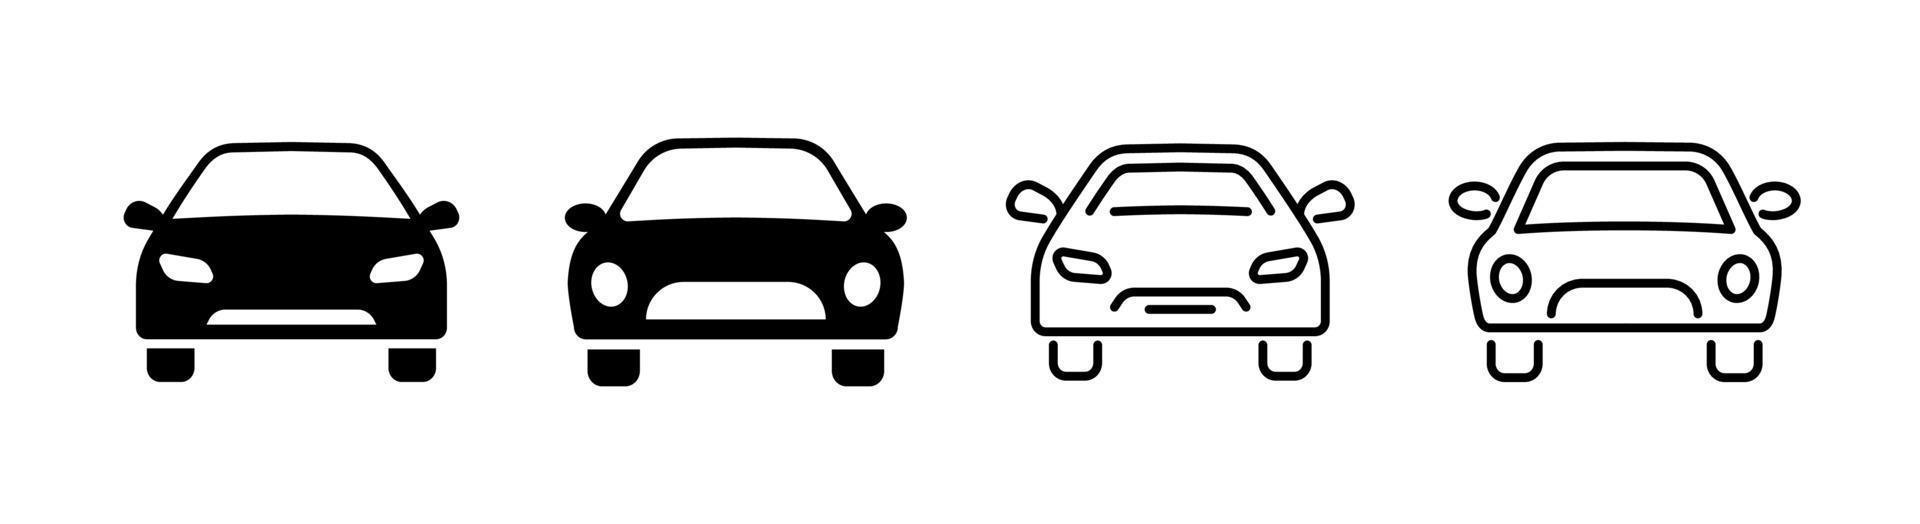 conjunto de ícones de carro de 4, elemento de design adequado para sites, design de impressão ou aplicativo vetor